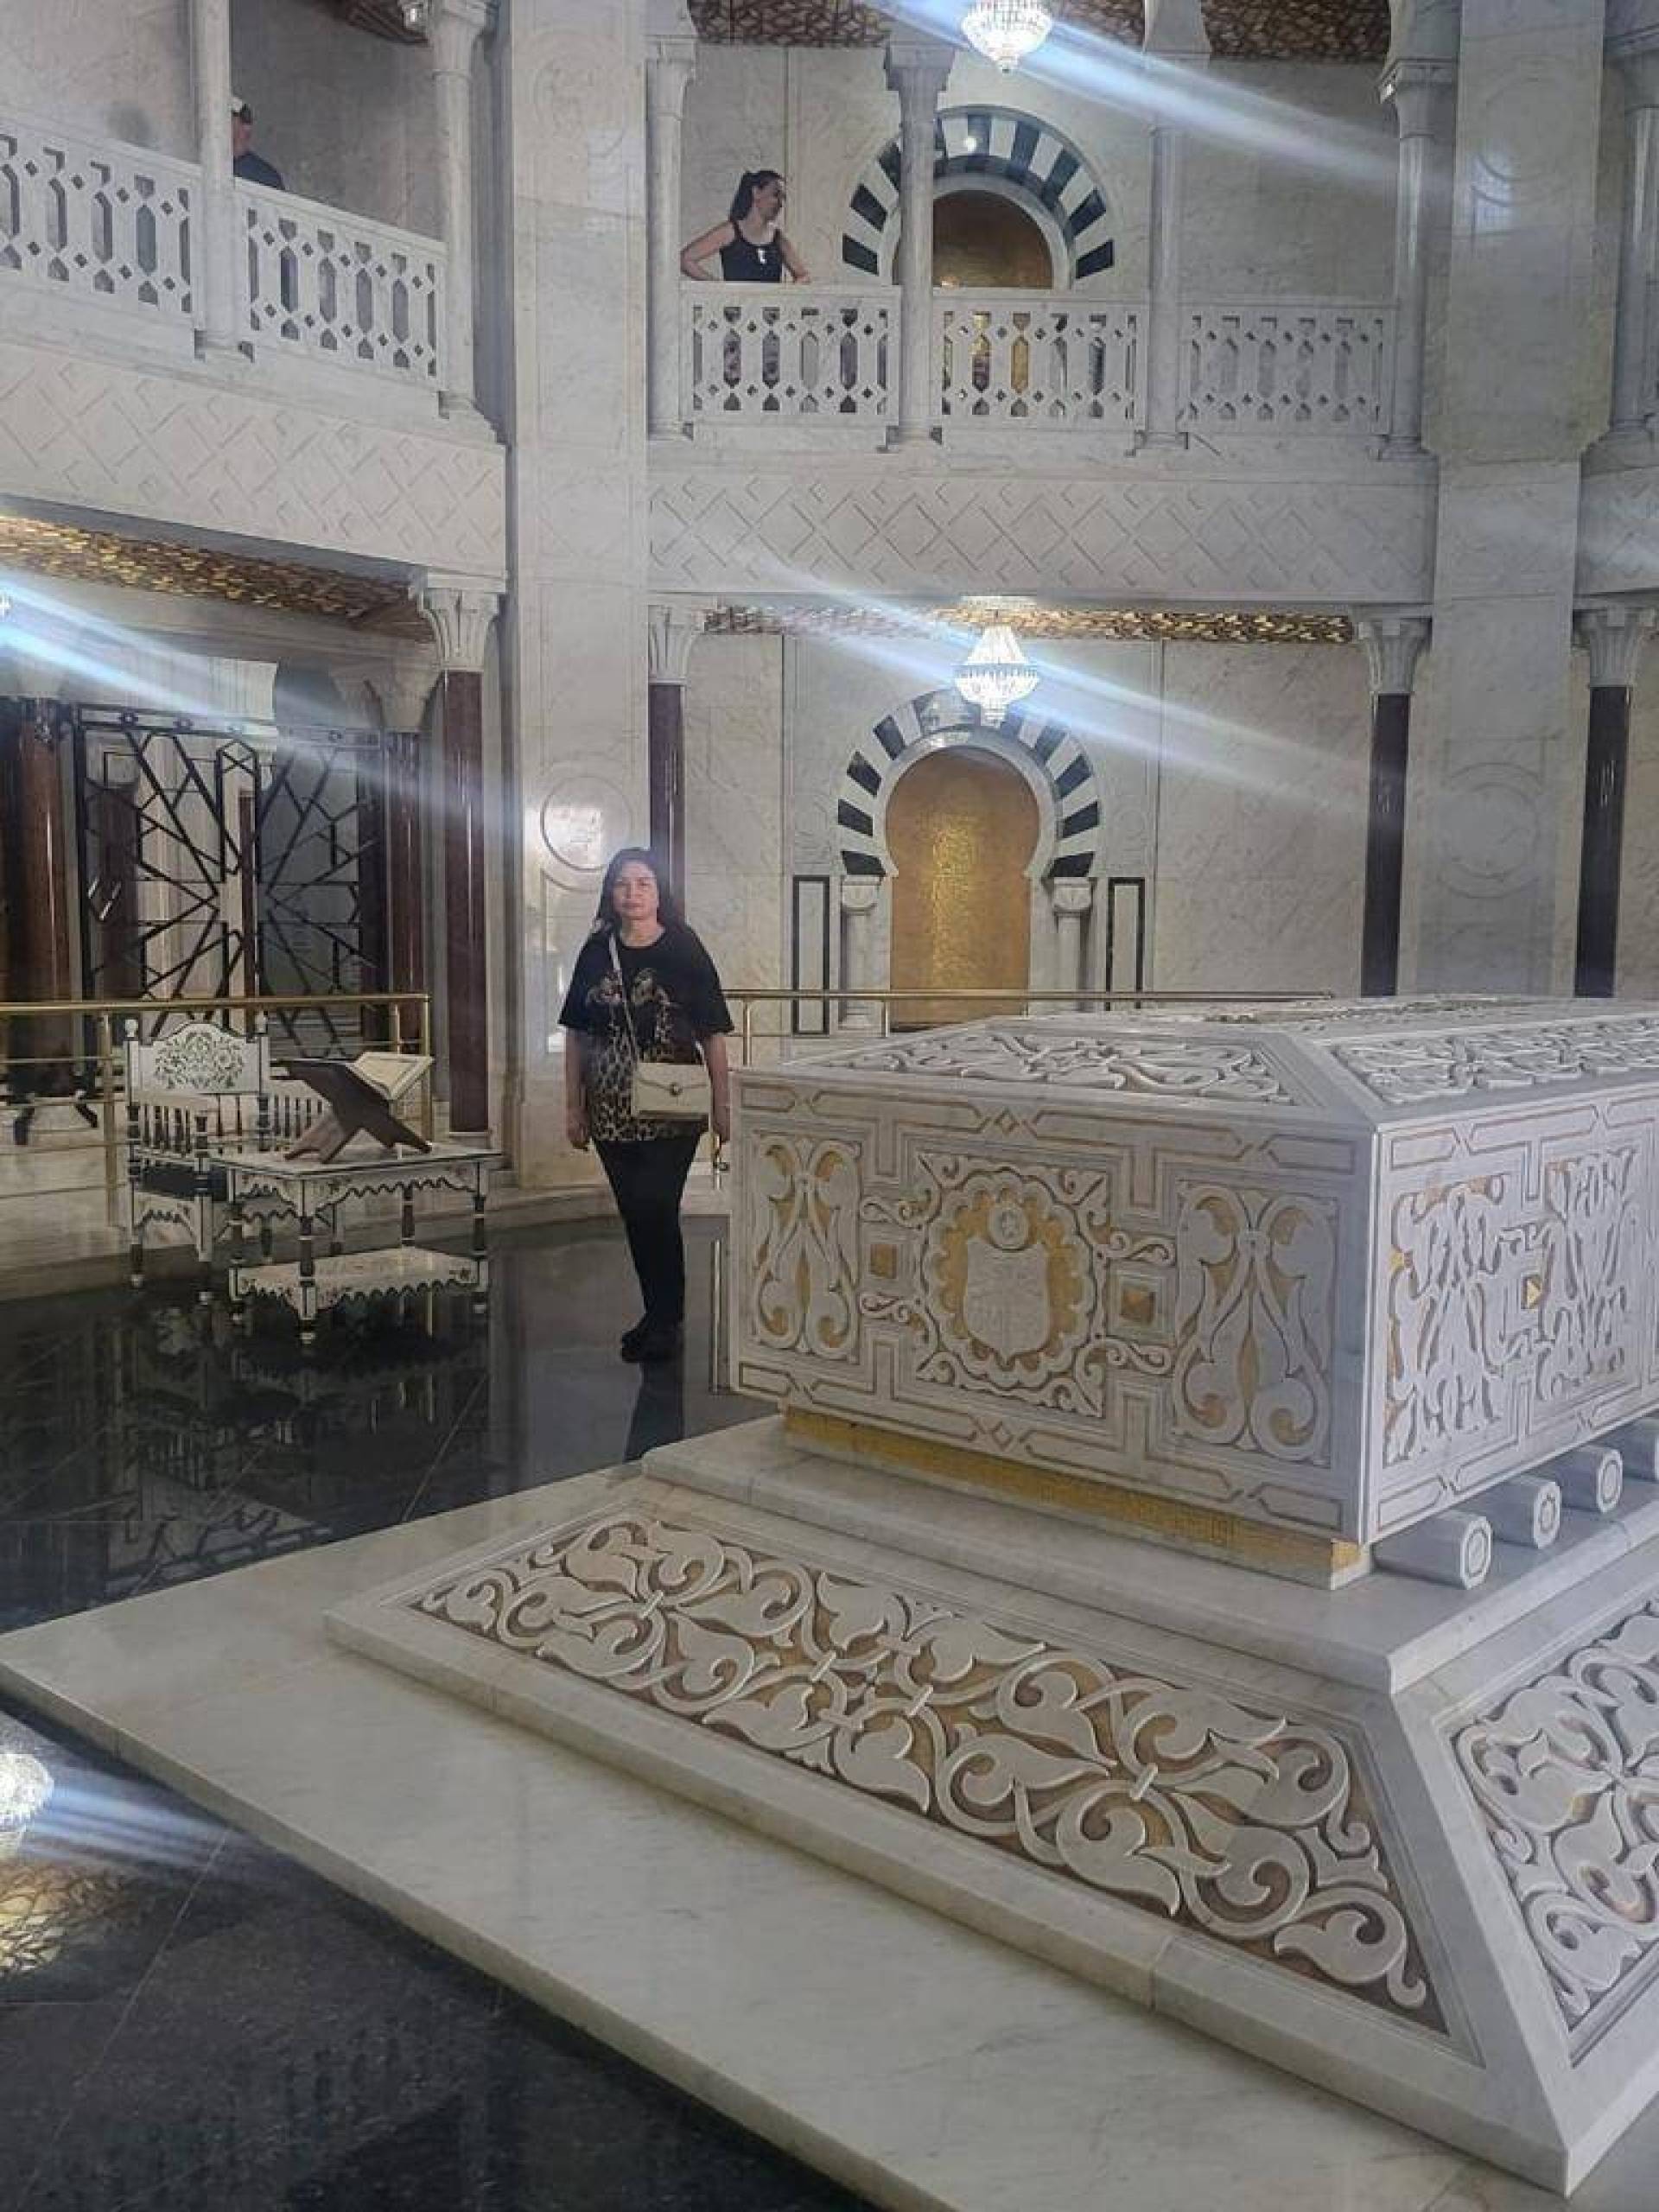 إلهام شاهين تكرم الرئيس الراحل بورقيبة في زيارتها إلى تونس وتكشف عن عودتها المبهرة إلى السينما!